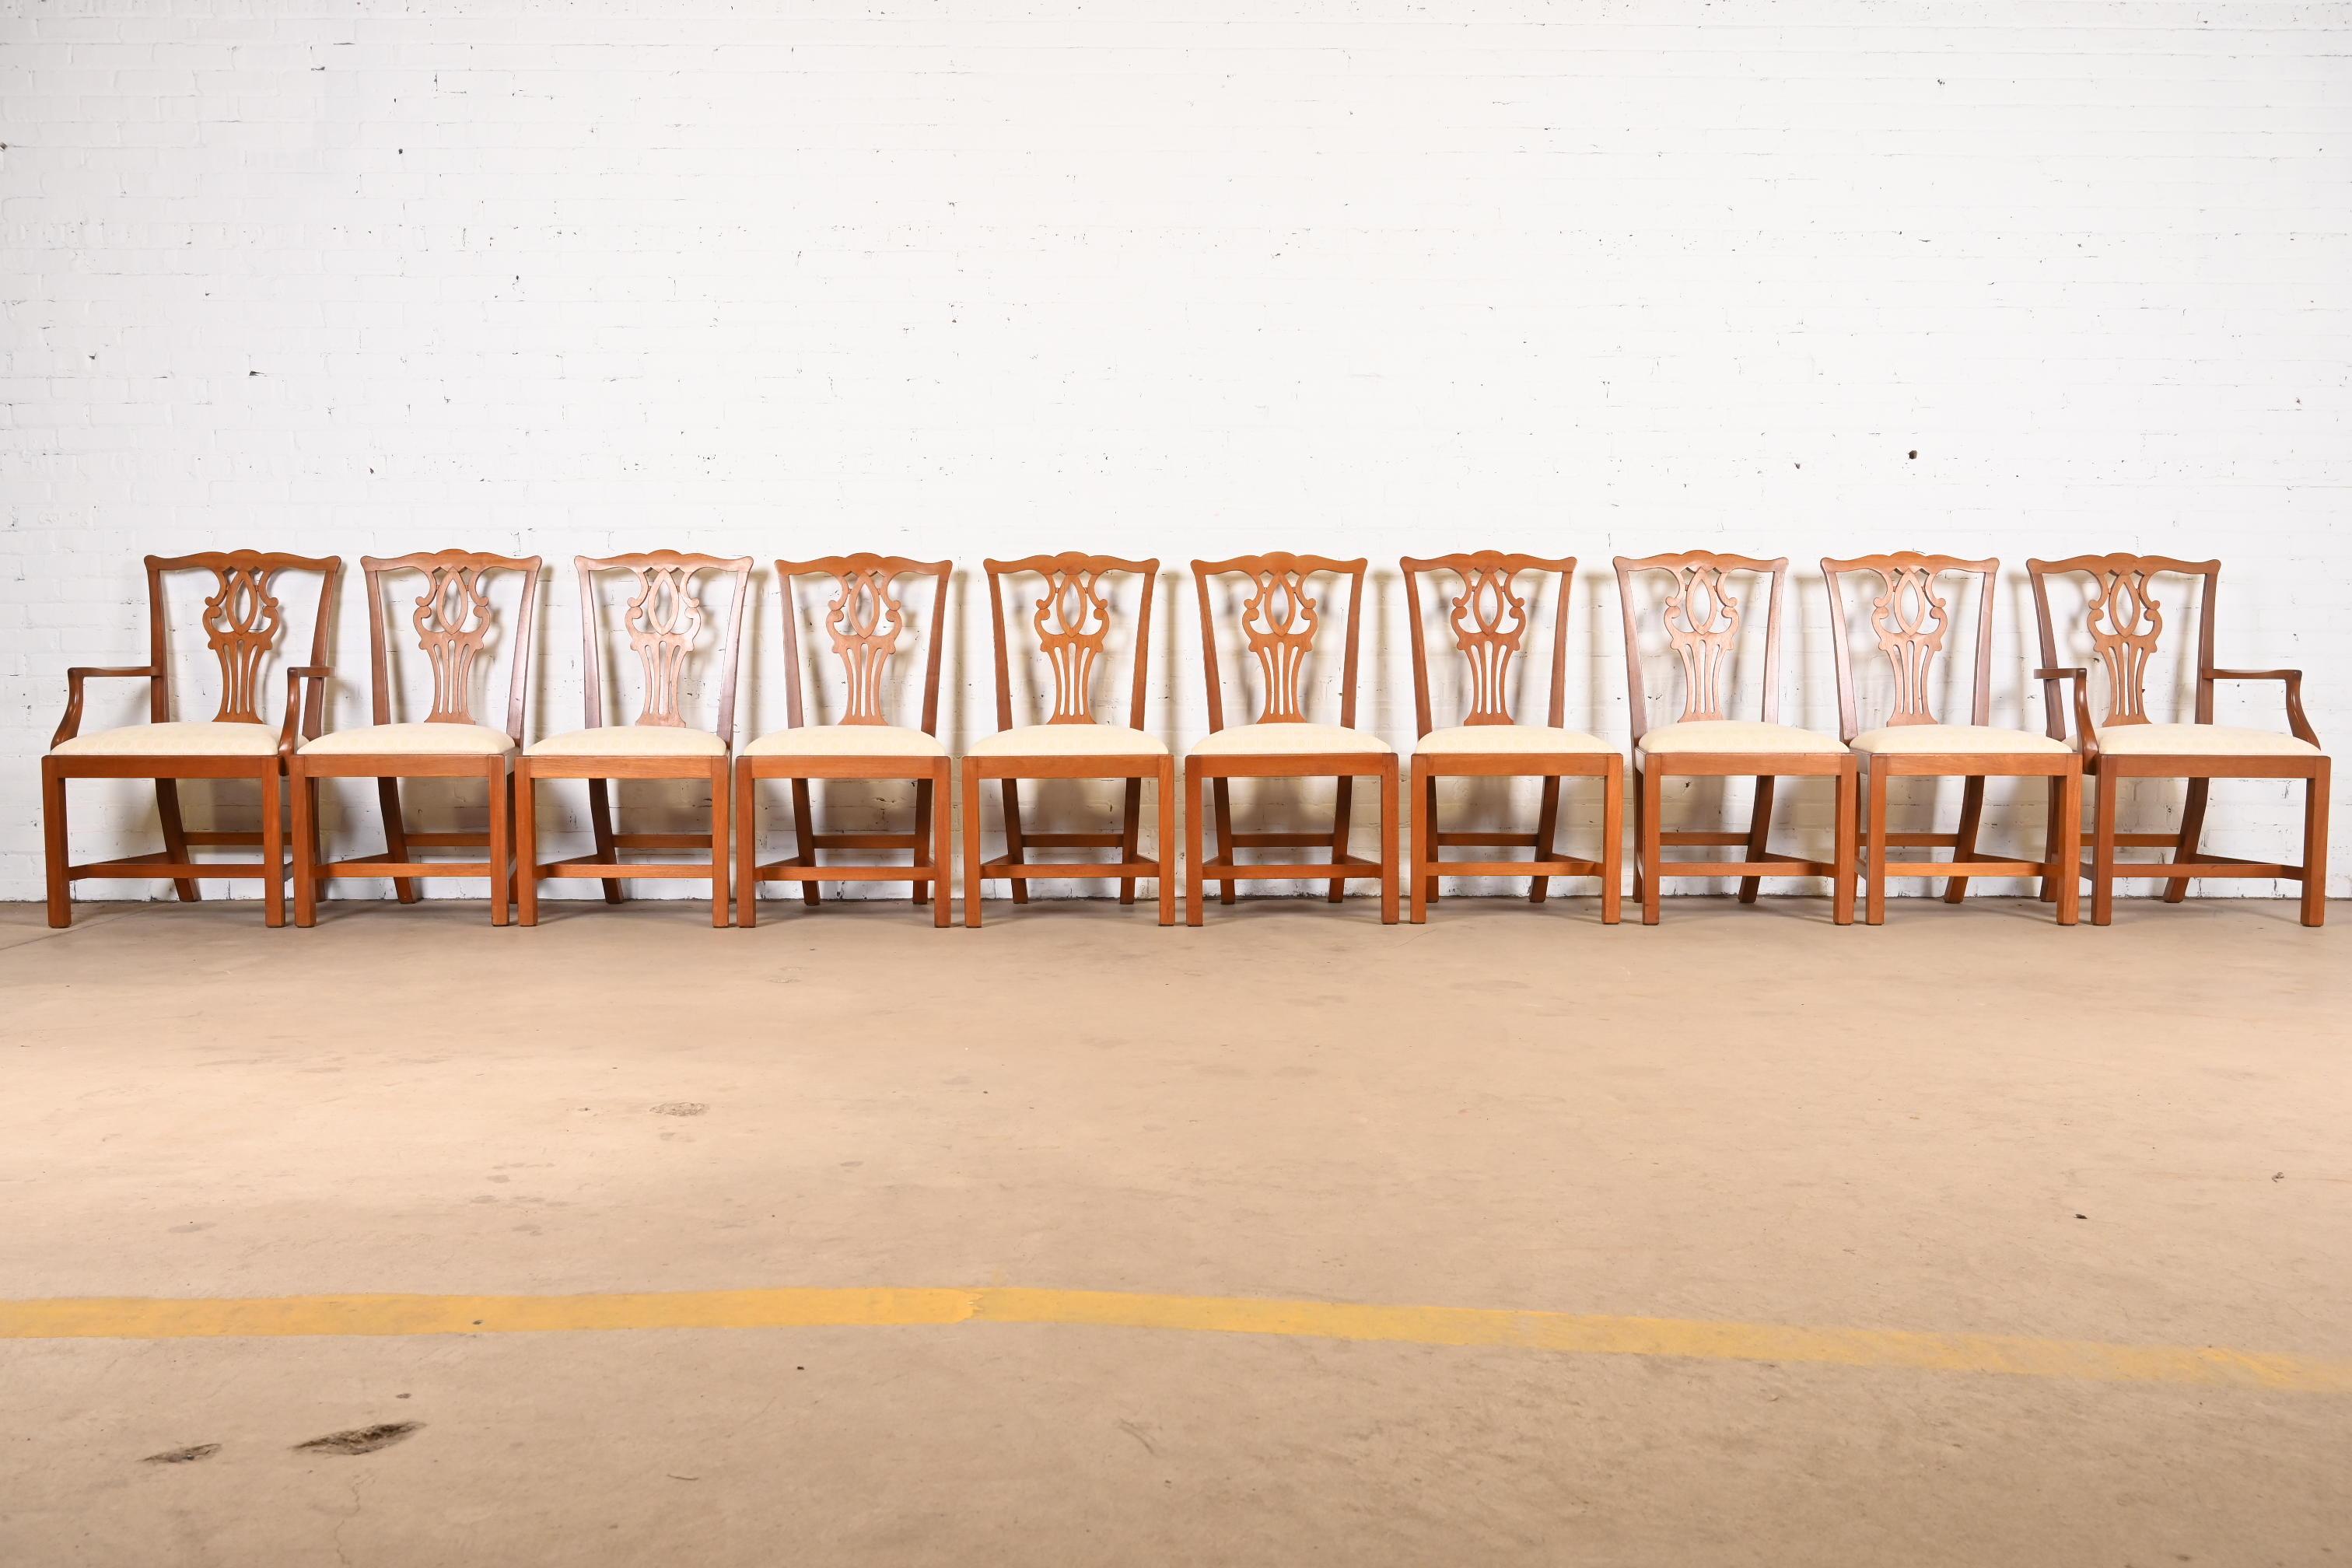 Un magnifique ensemble de dix chaises de salle à manger de style Chippendale ou géorgien

À la manière des meubles Baker

États-Unis, fin du 20e siècle

Cadres en acajou massif sculpté, avec sièges rembourrés.

Mesures :
Chaises d'appoint - 21 